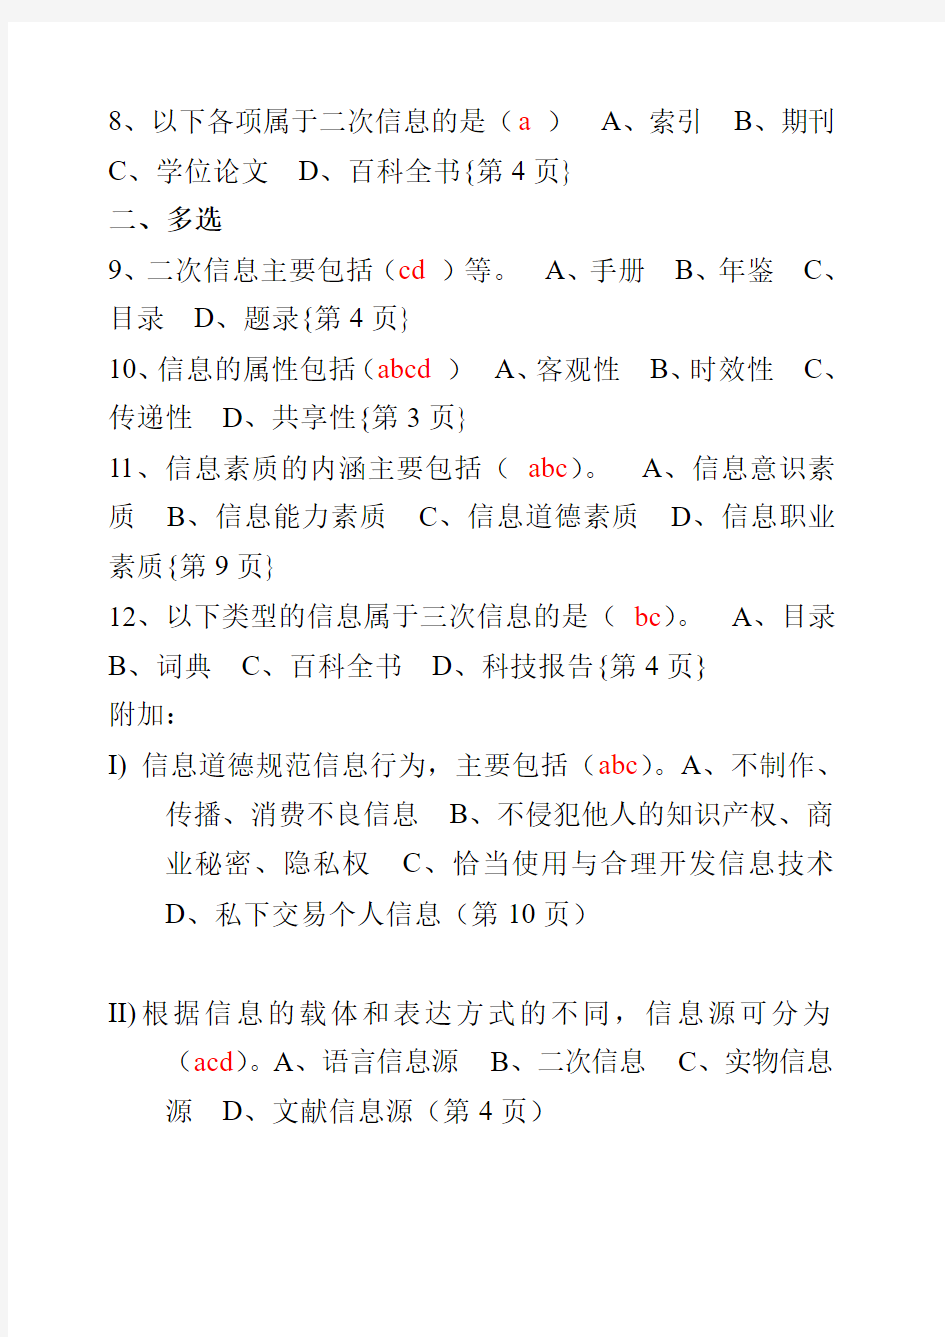 川师信息检索题库(带页码)2015年4月校对 最新版本